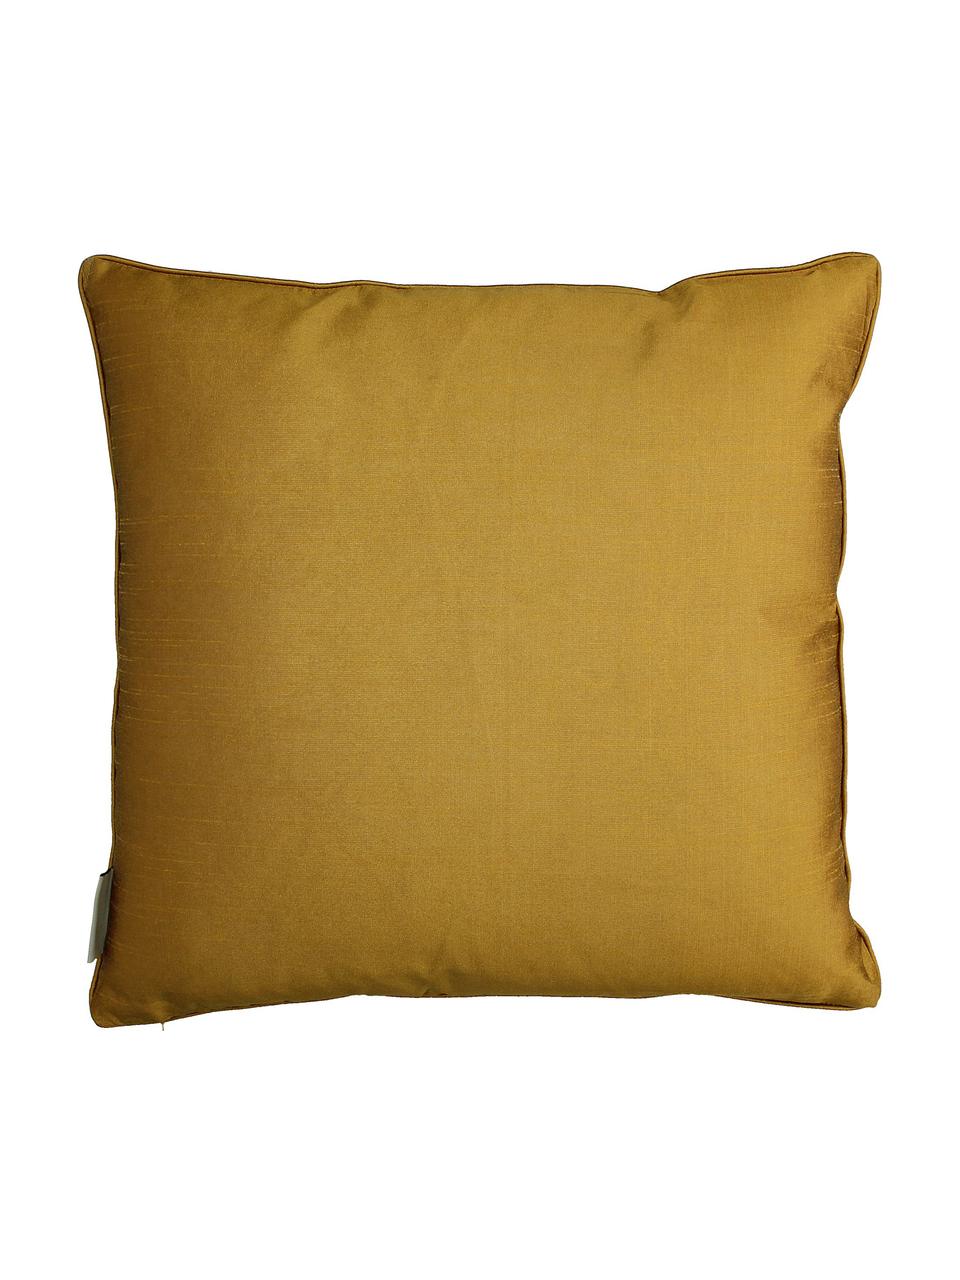 Poduszka z aksamitu z wypełnieniem Flower Head, Tapicerka: 100% aksamit bawełniany, Brunatnożółty, wielobarwny, S 45 x D 45 cm